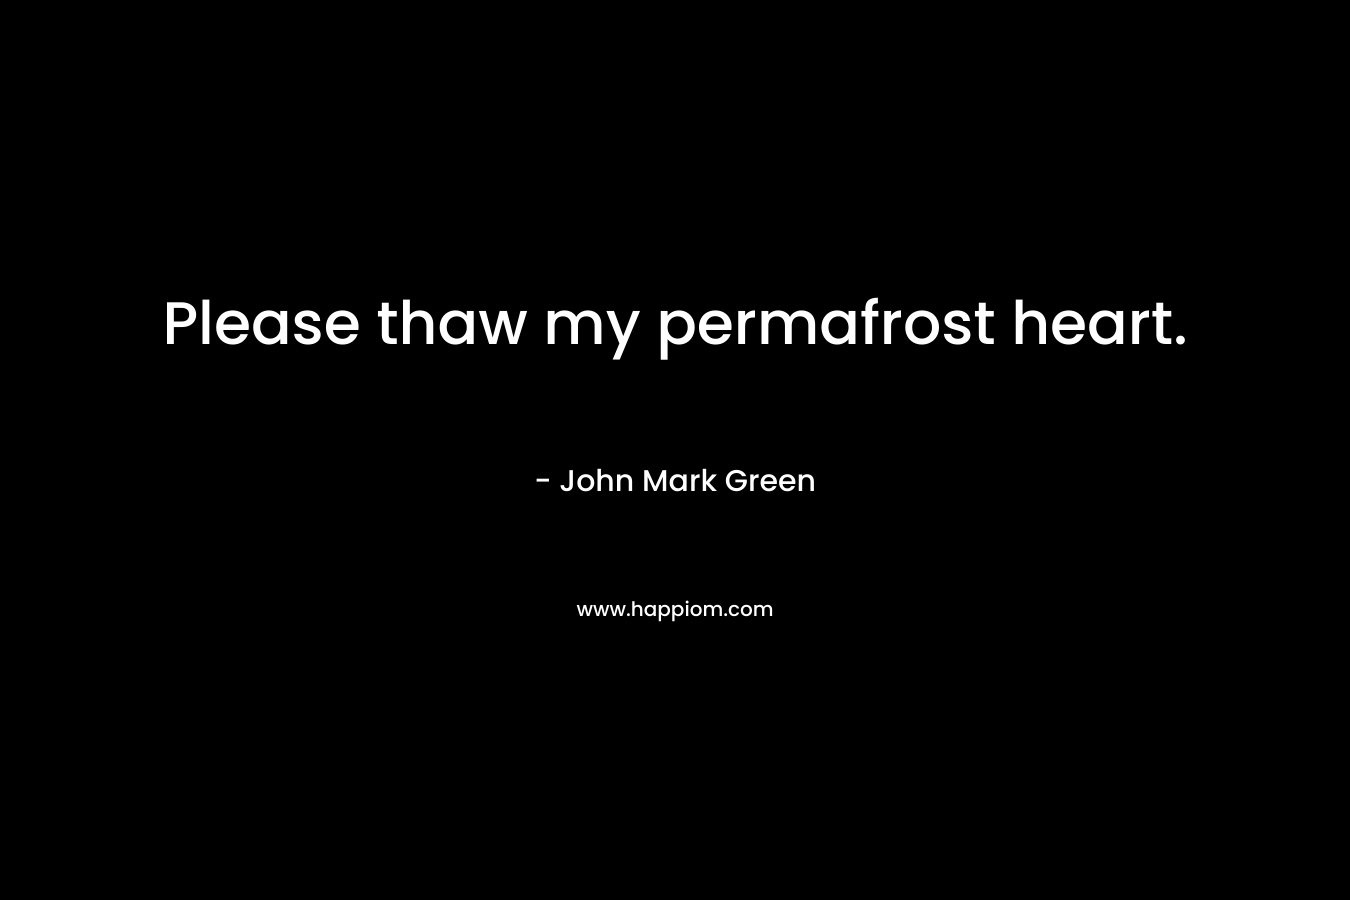 Please thaw my permafrost heart.